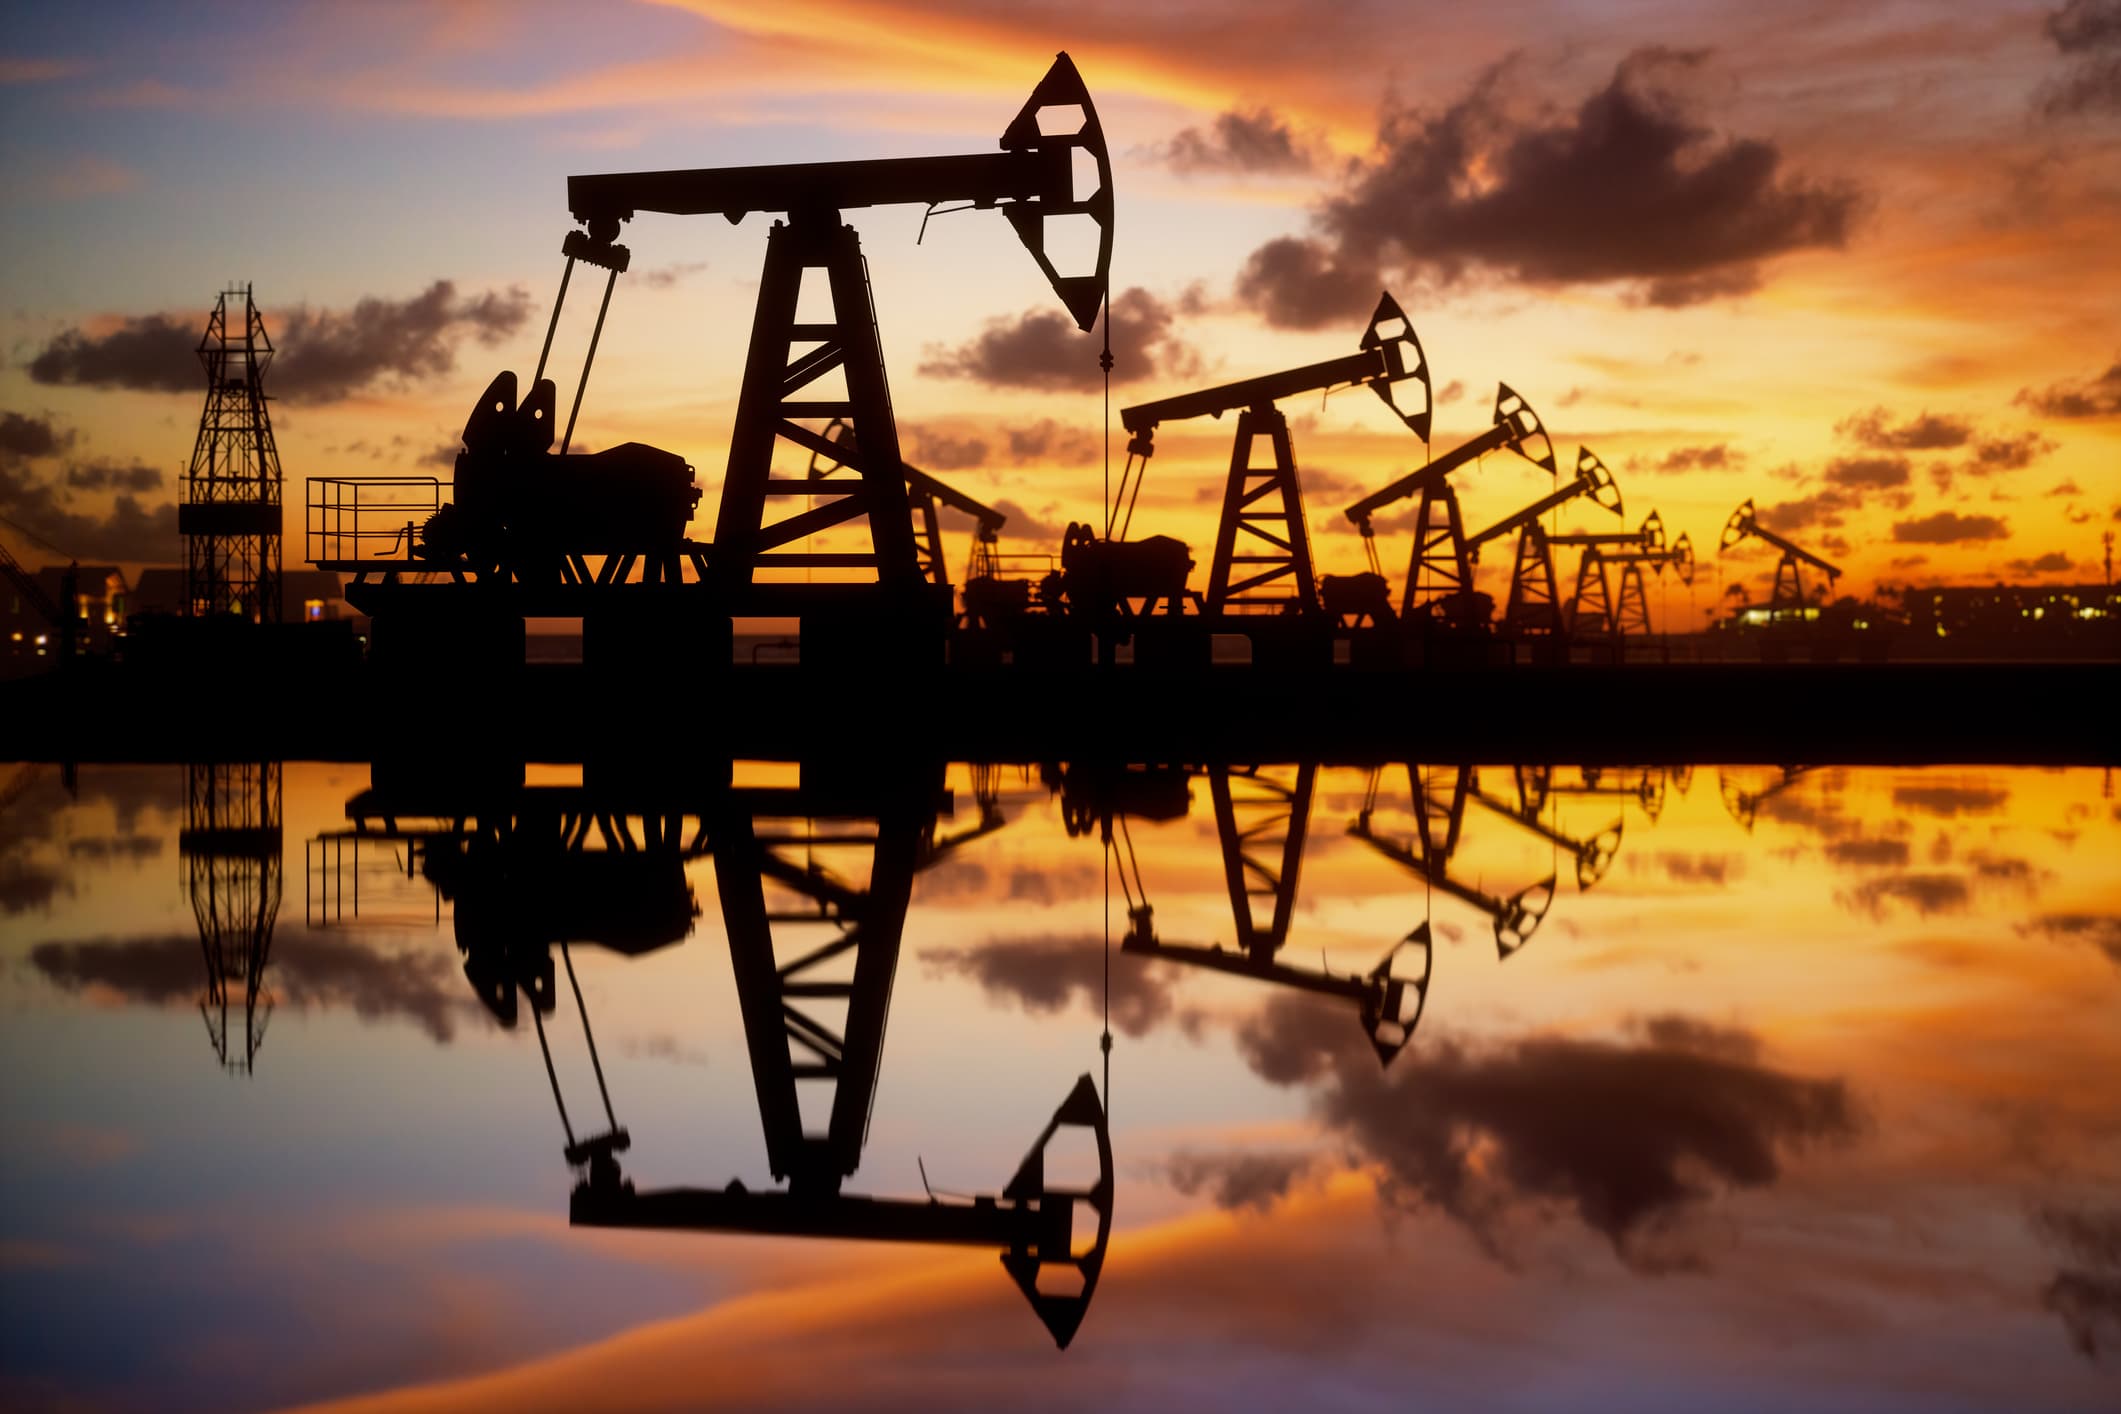 ارتفاع أسعار النفط لليوم الثاني على التوالي